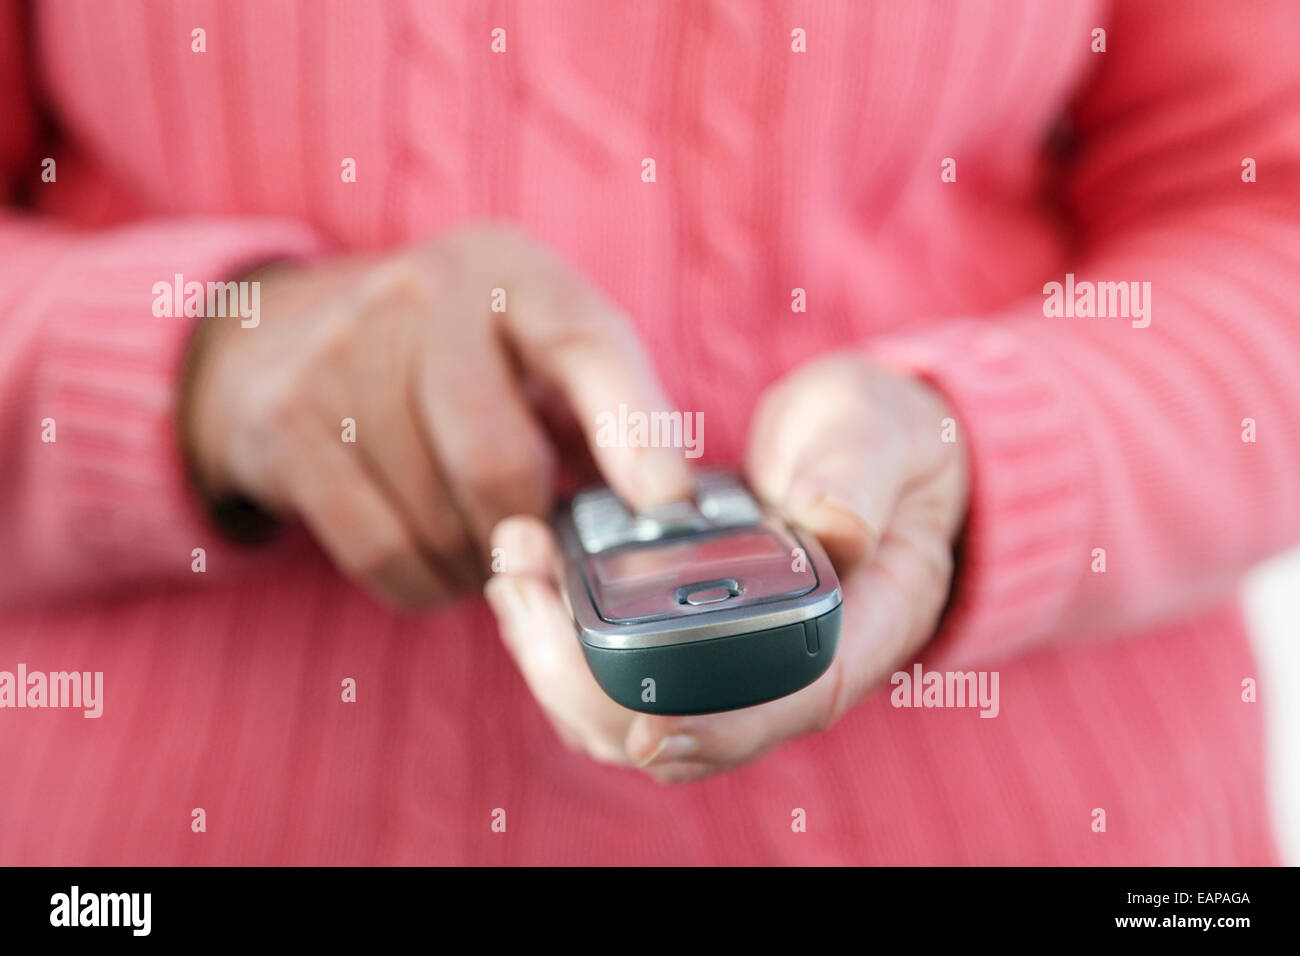 Une vieille femme senior droitière utilisant un clavier de combiné de téléphone tactile pour composer un numéro de téléphone pour passer un appel depuis sa maison. Angleterre, Royaume-Uni, Grande-Bretagne Banque D'Images